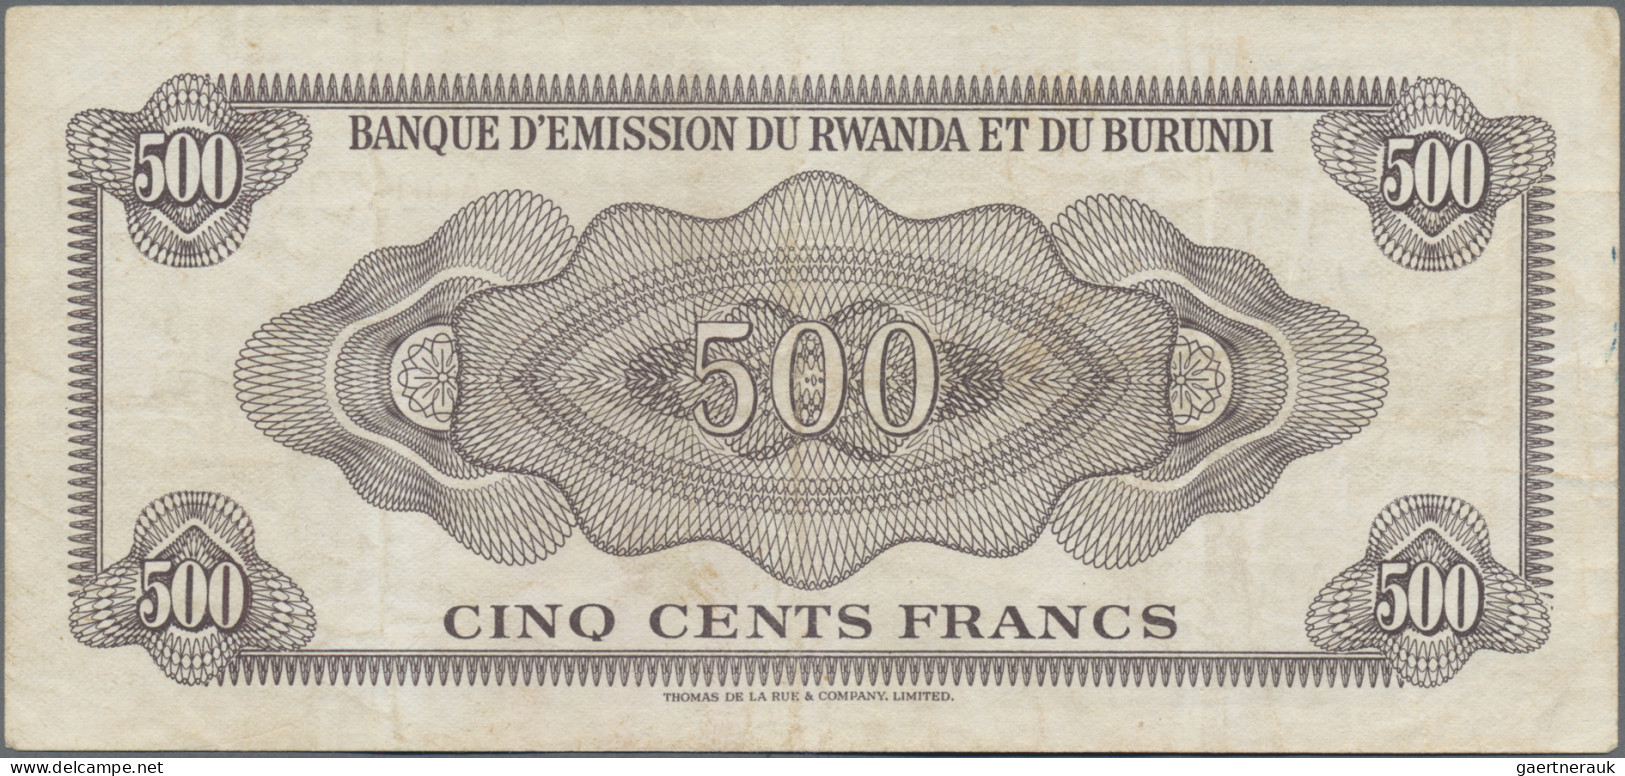 Rwanda-Burundi: Banque D'Émission Du Rwanda Et Du Burundi, 500 Francs 1960, P.6a - Ruanda-Urundi